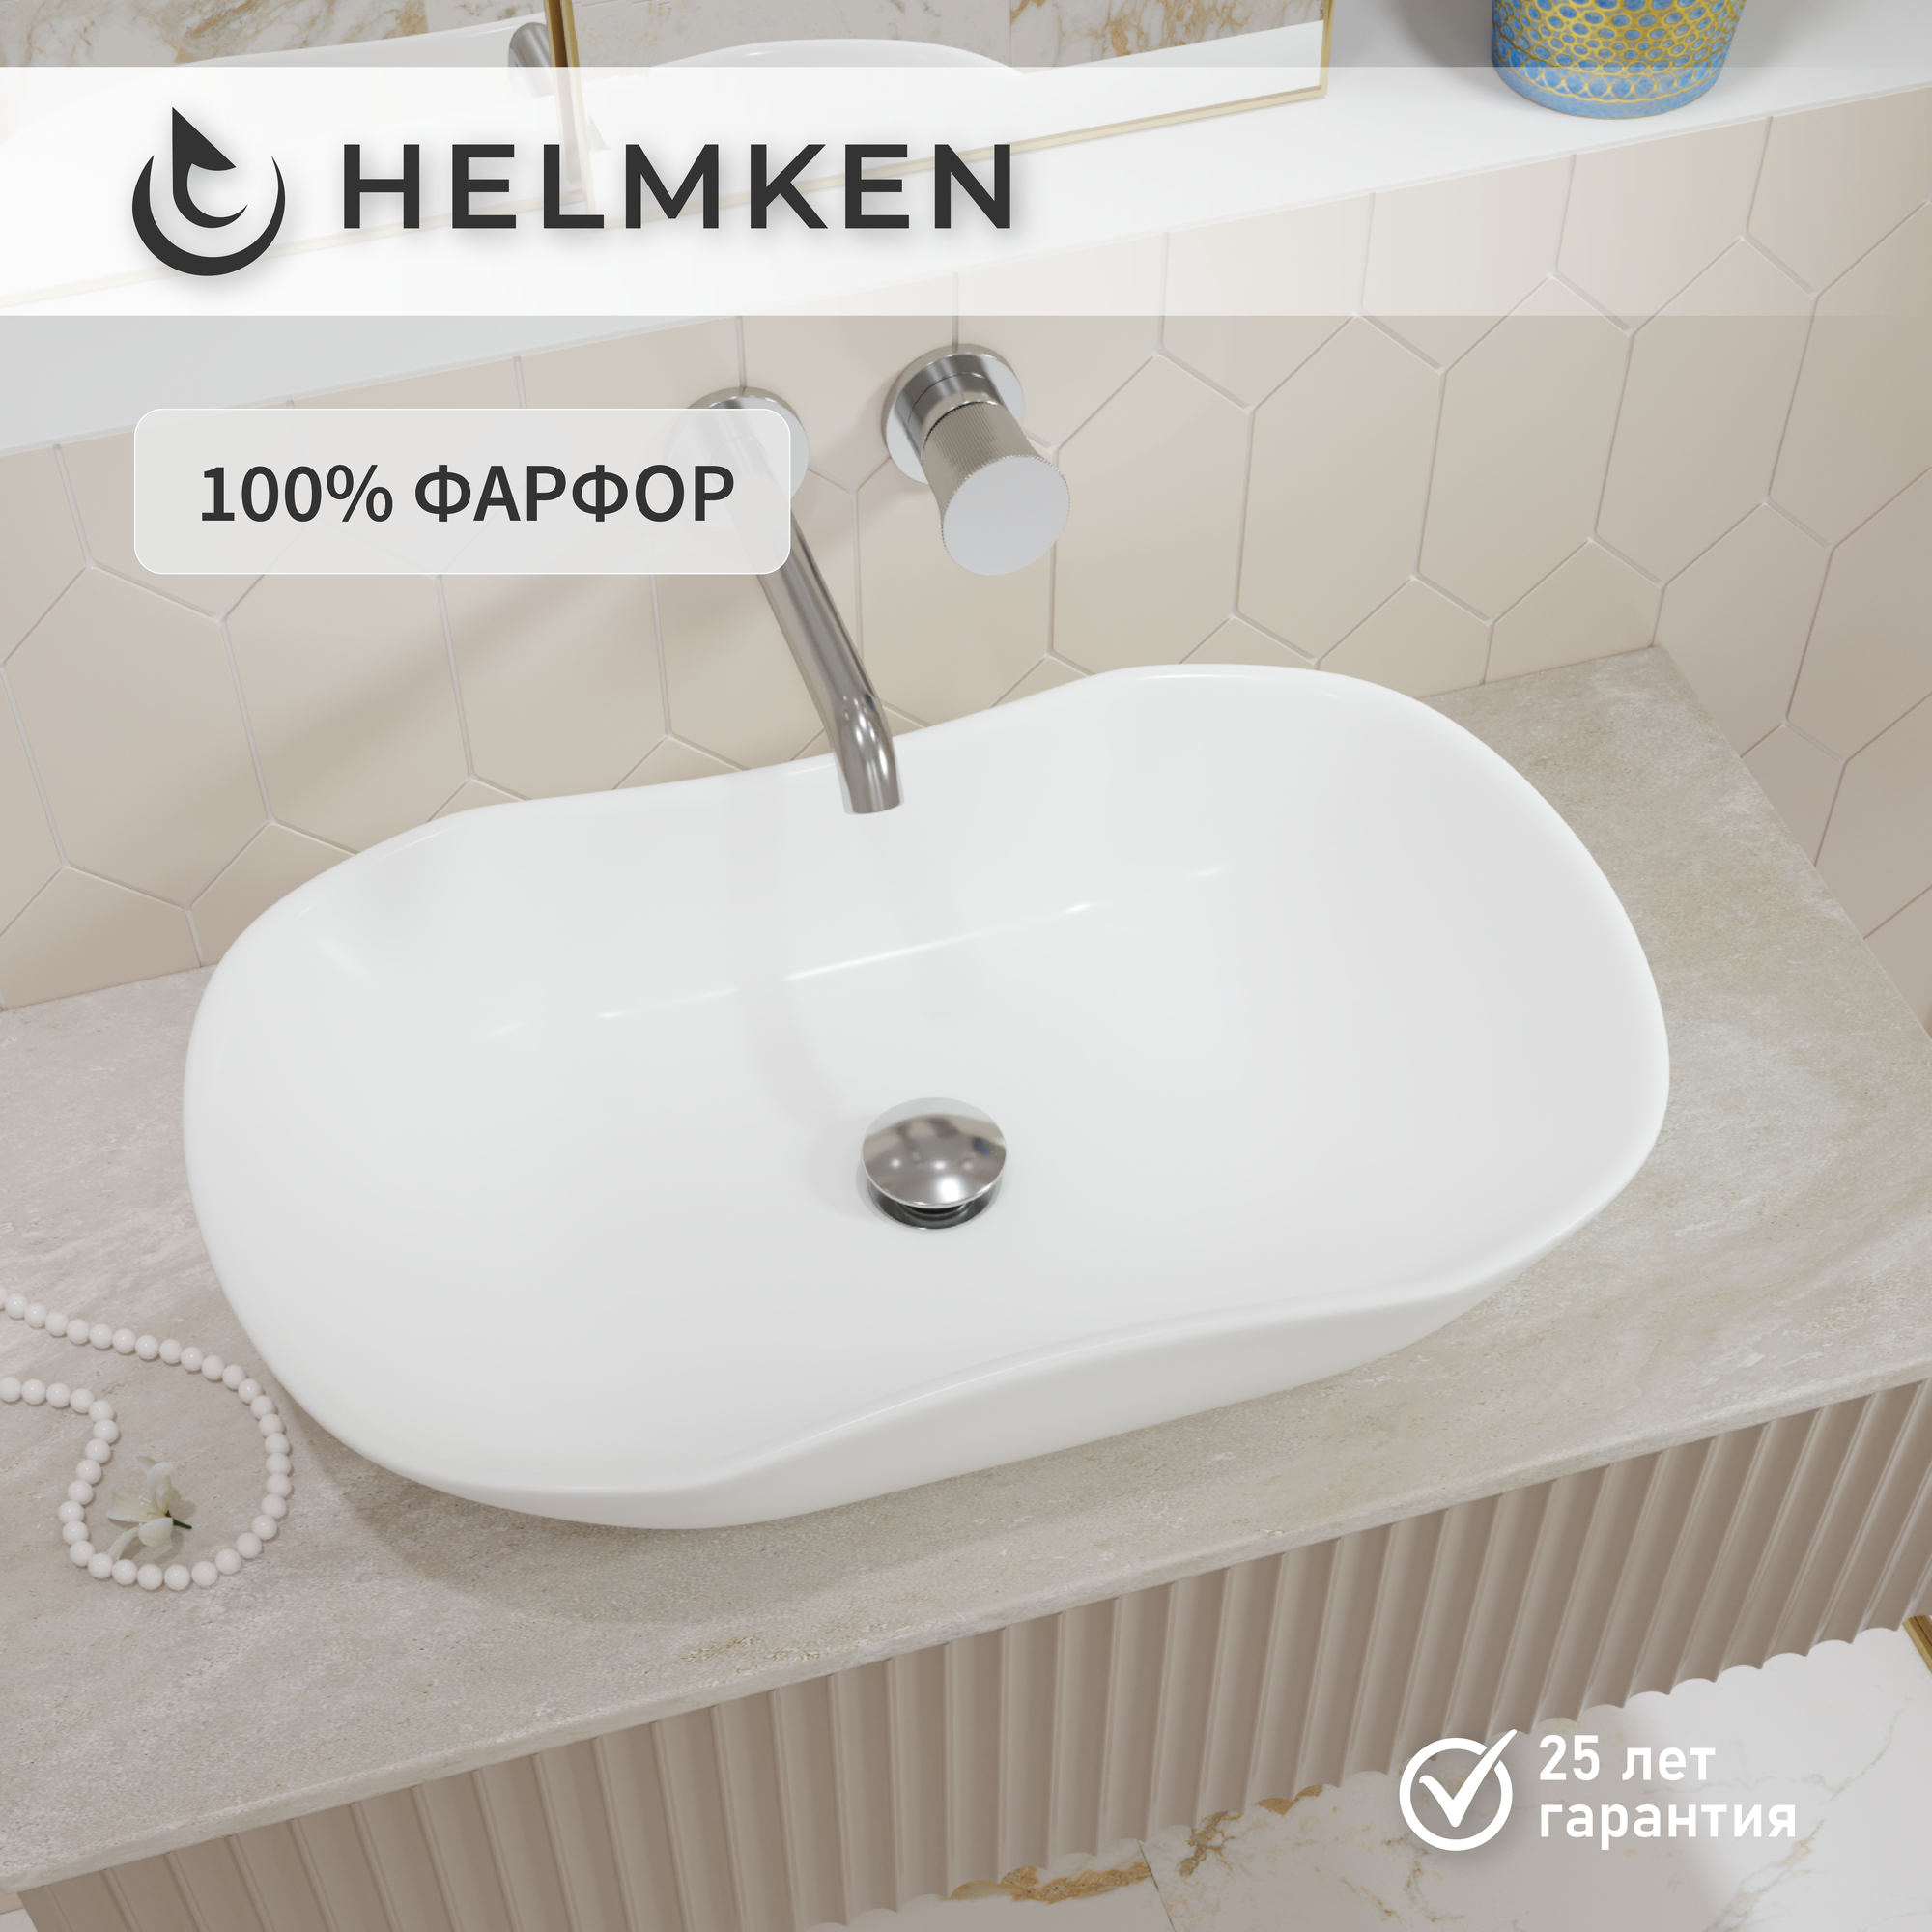 Накладная раковина в ванную Helmken 57066000: умывальник овальный из фарфора 66 см, белый цвет, гарантия 25 лет